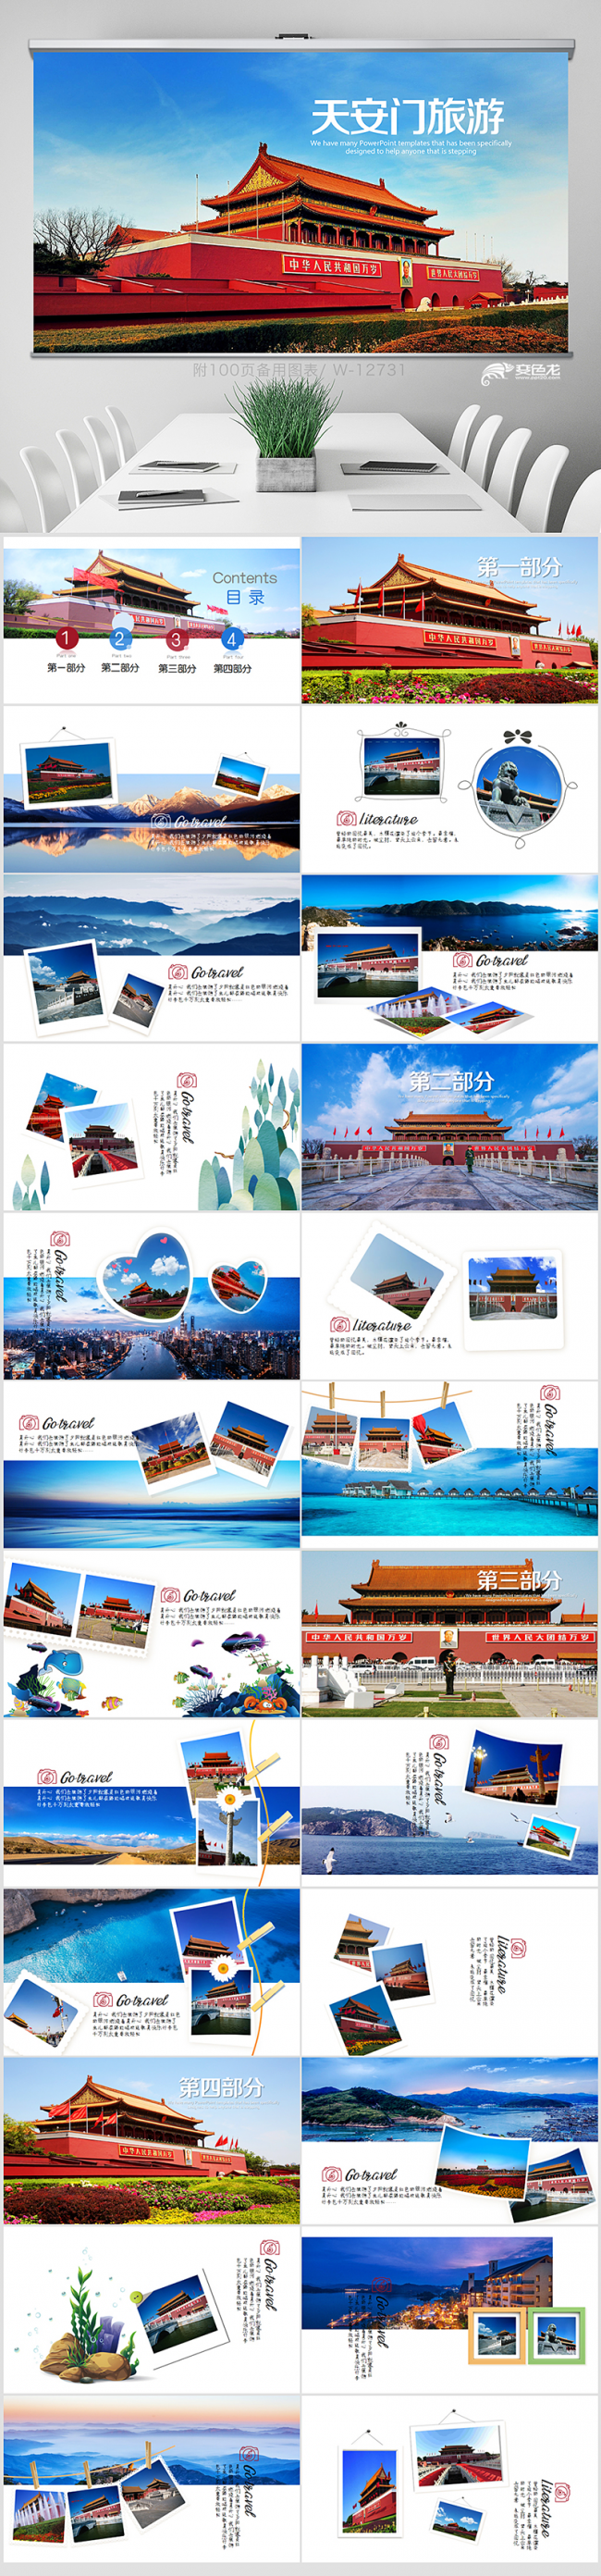 北京天安门旅游电子相册PPT动态模板